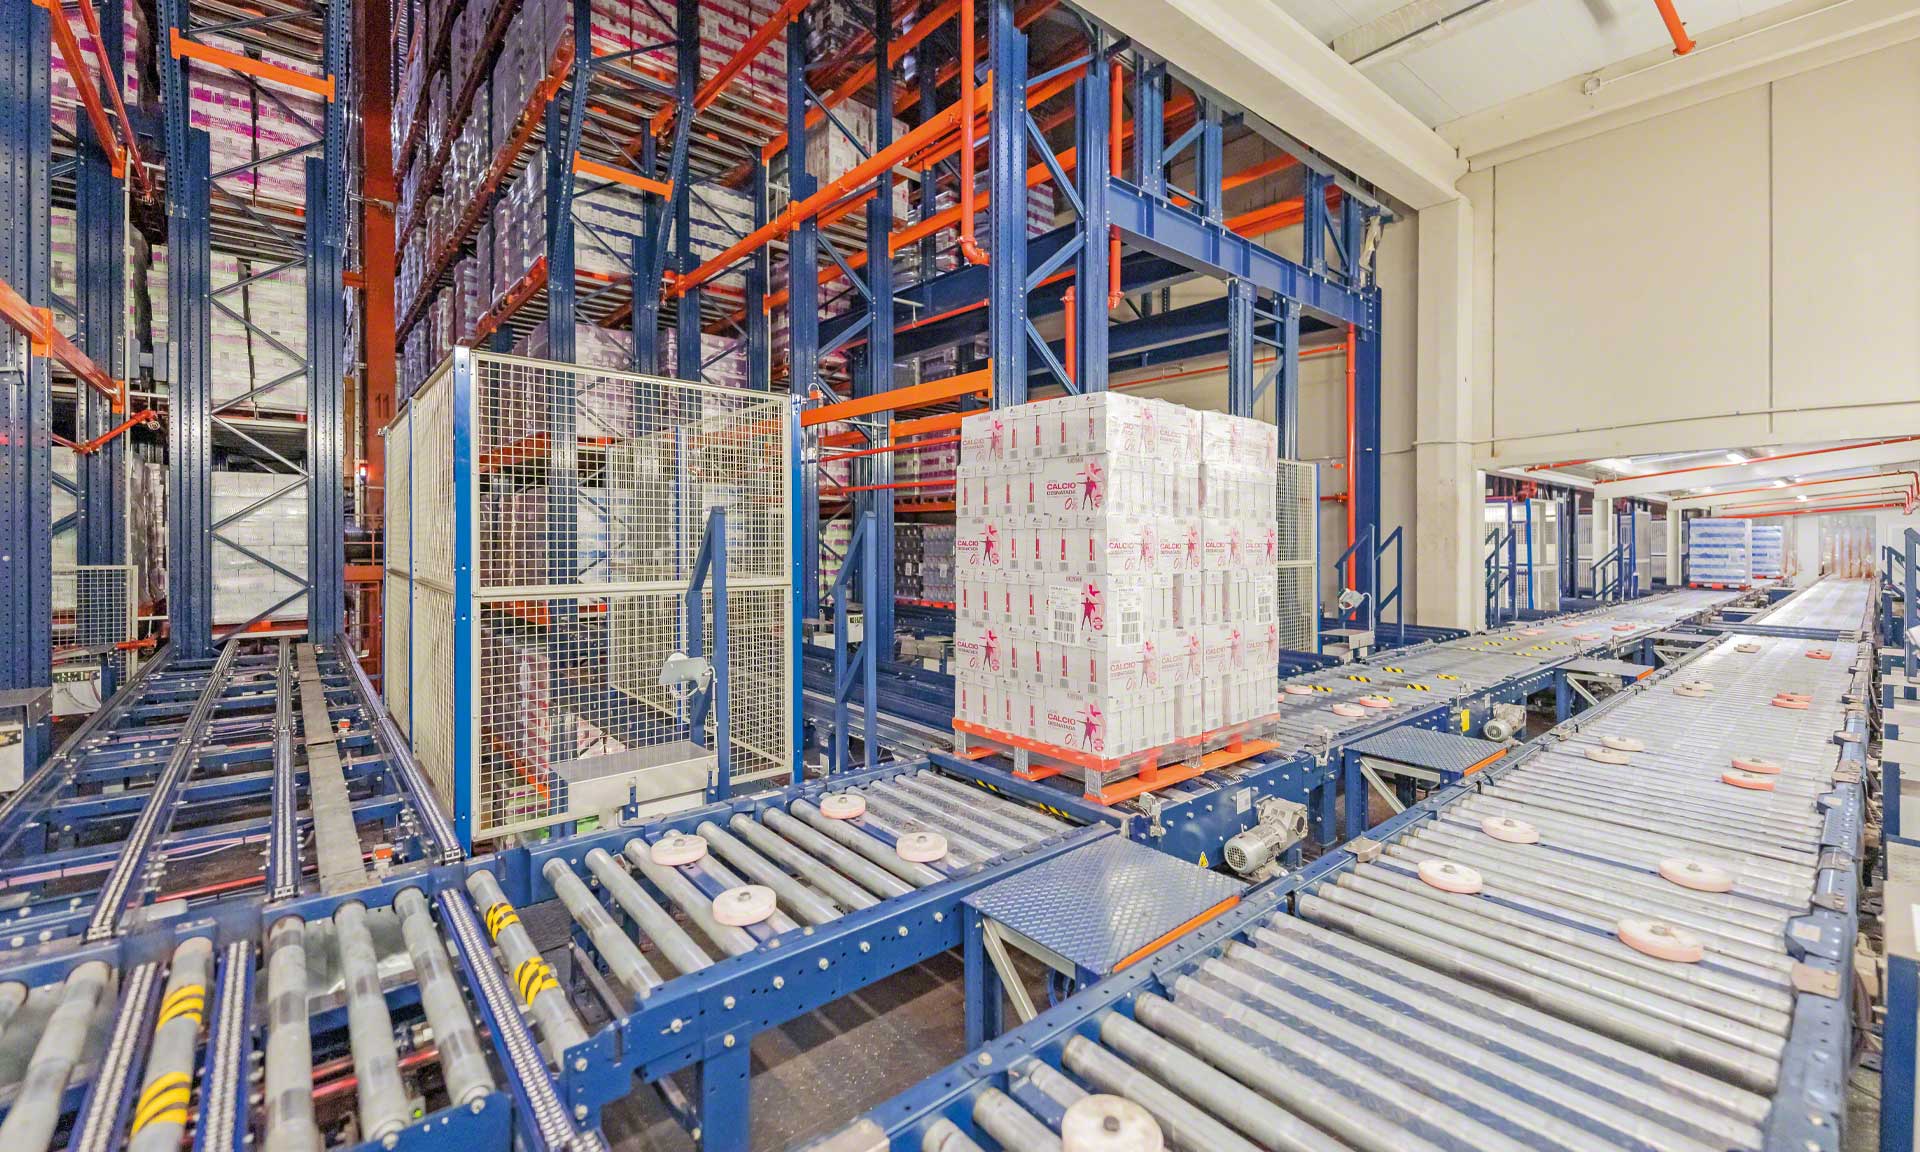 Esnelat automatyzuje logistykę produktów mleczarskich dzięki dwóm magazynom automatycznym